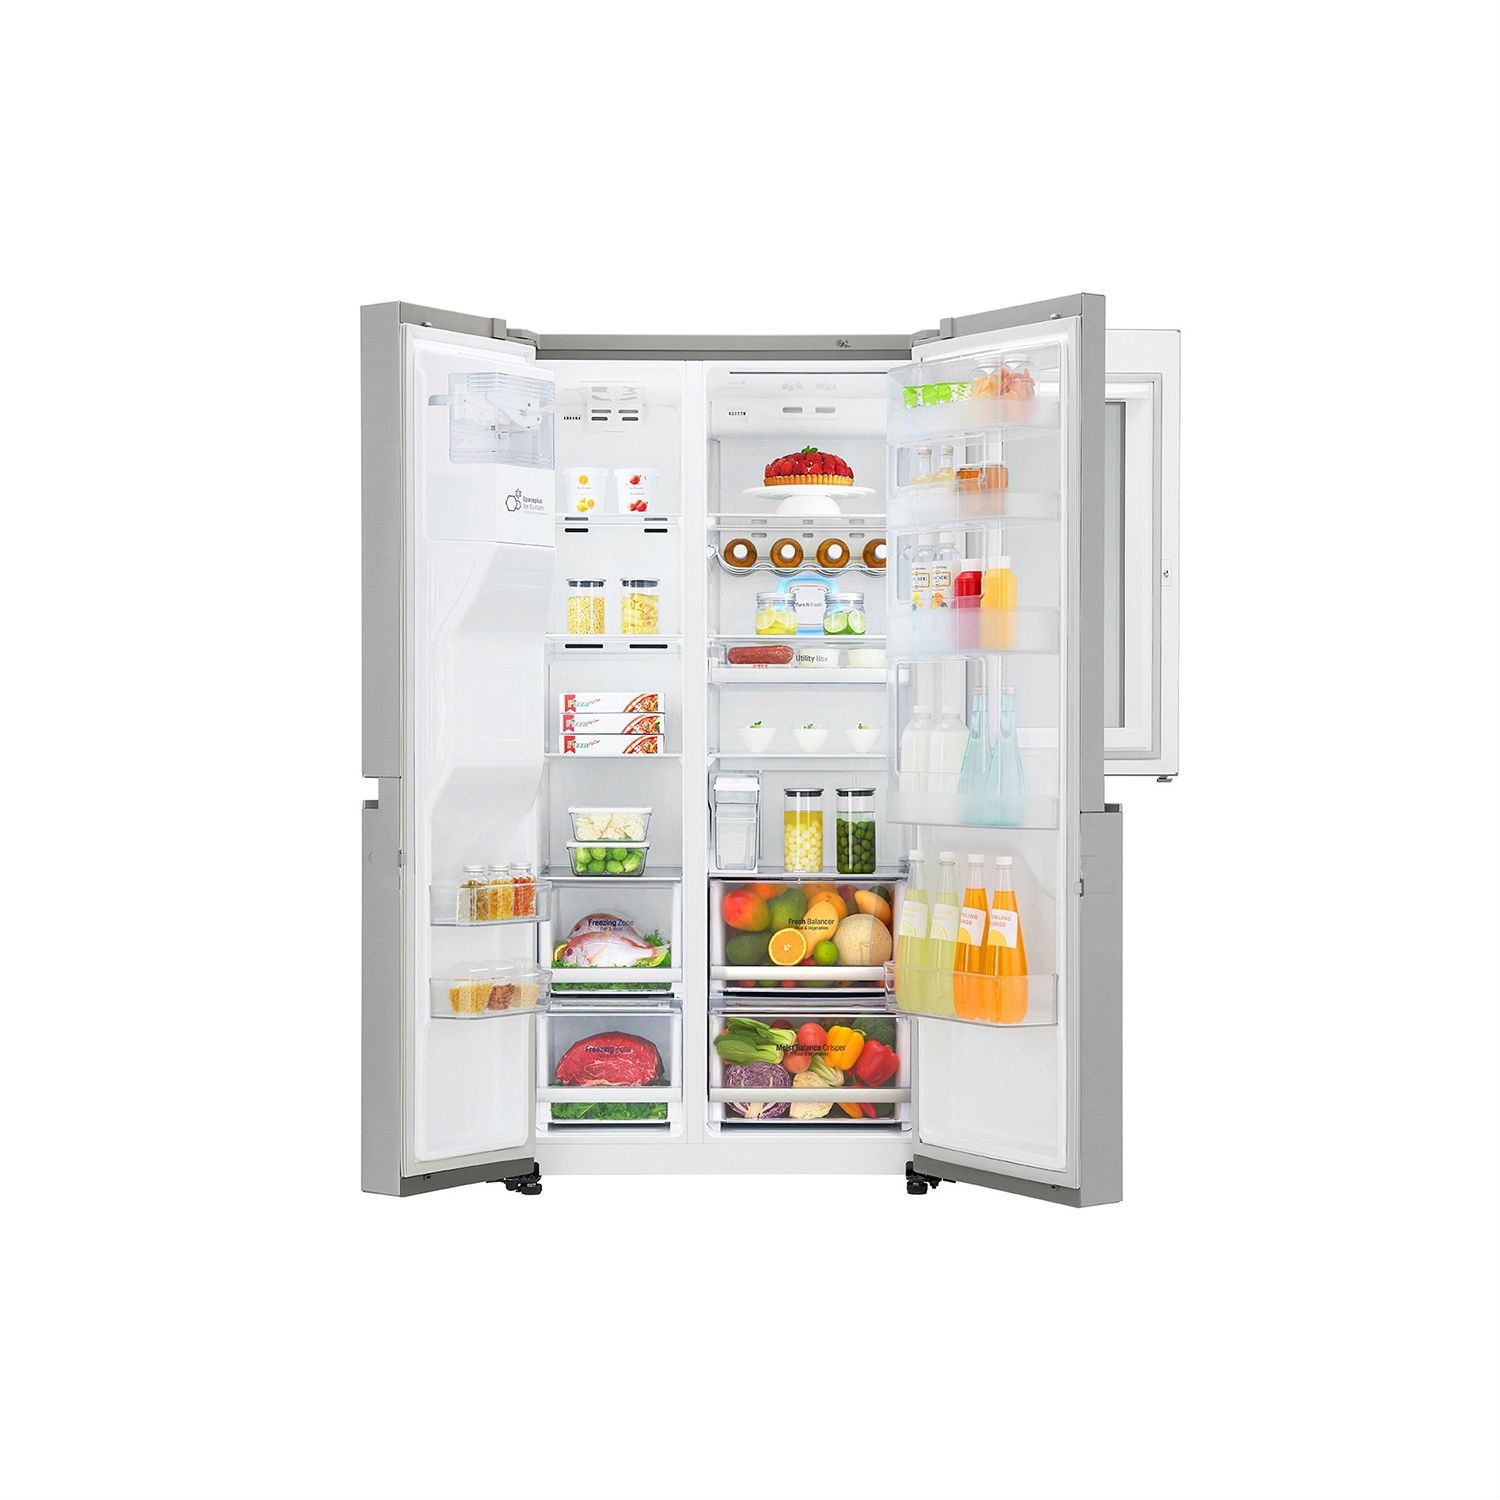 LG ELECTRONICS InstaView Door-in-Door American Style Fridge Freezer - PREMIUM STEEL - A++ Energy Rated - 3